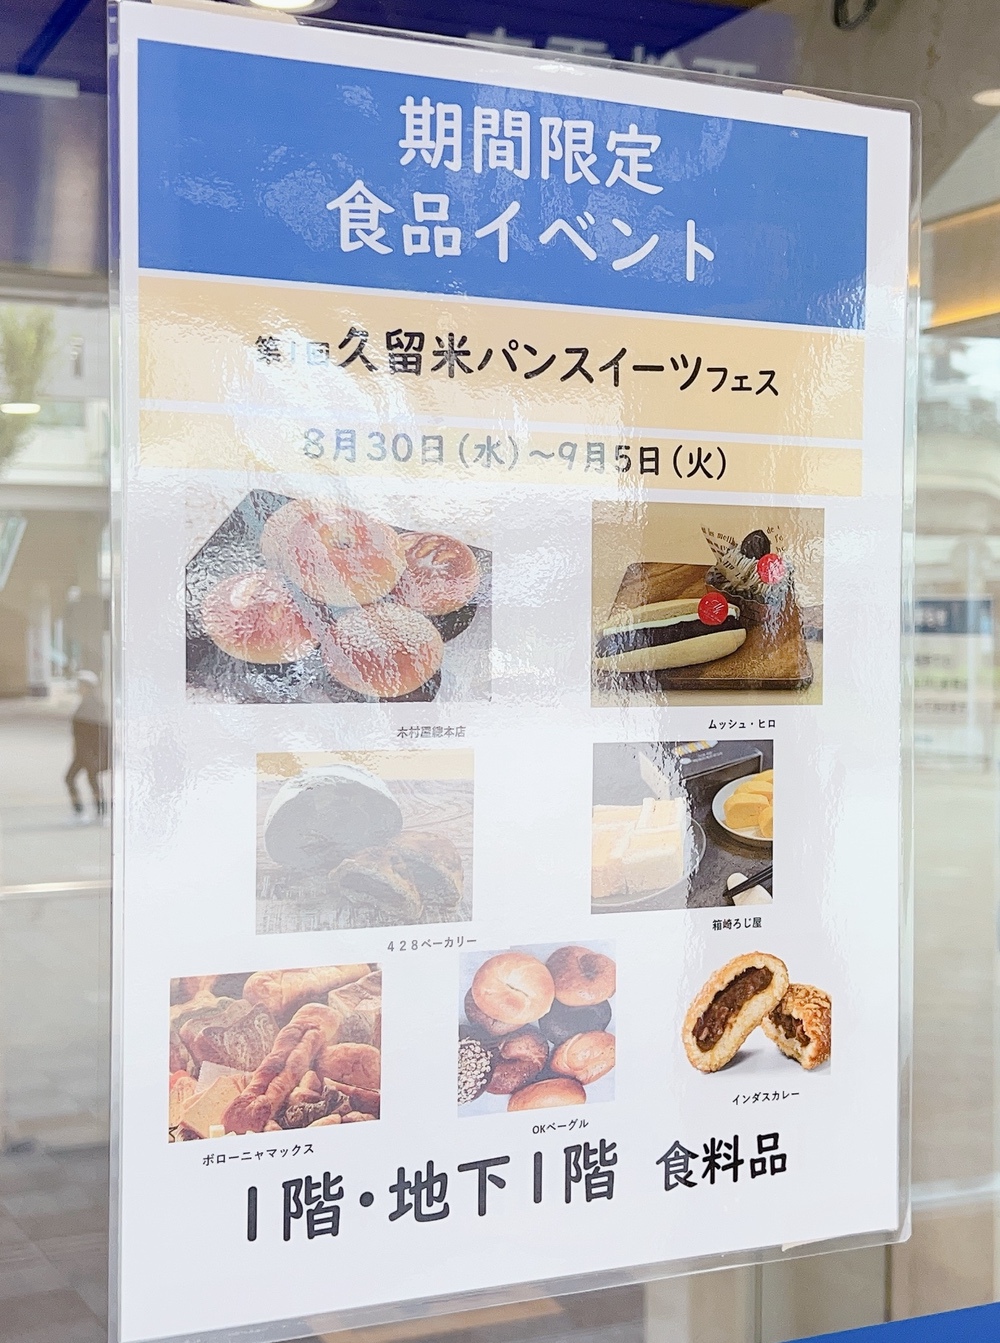 「第1回 久留米パン・スイーツフェス」岩田屋久留米店で開催 パンやスイーツが勢ぞろい